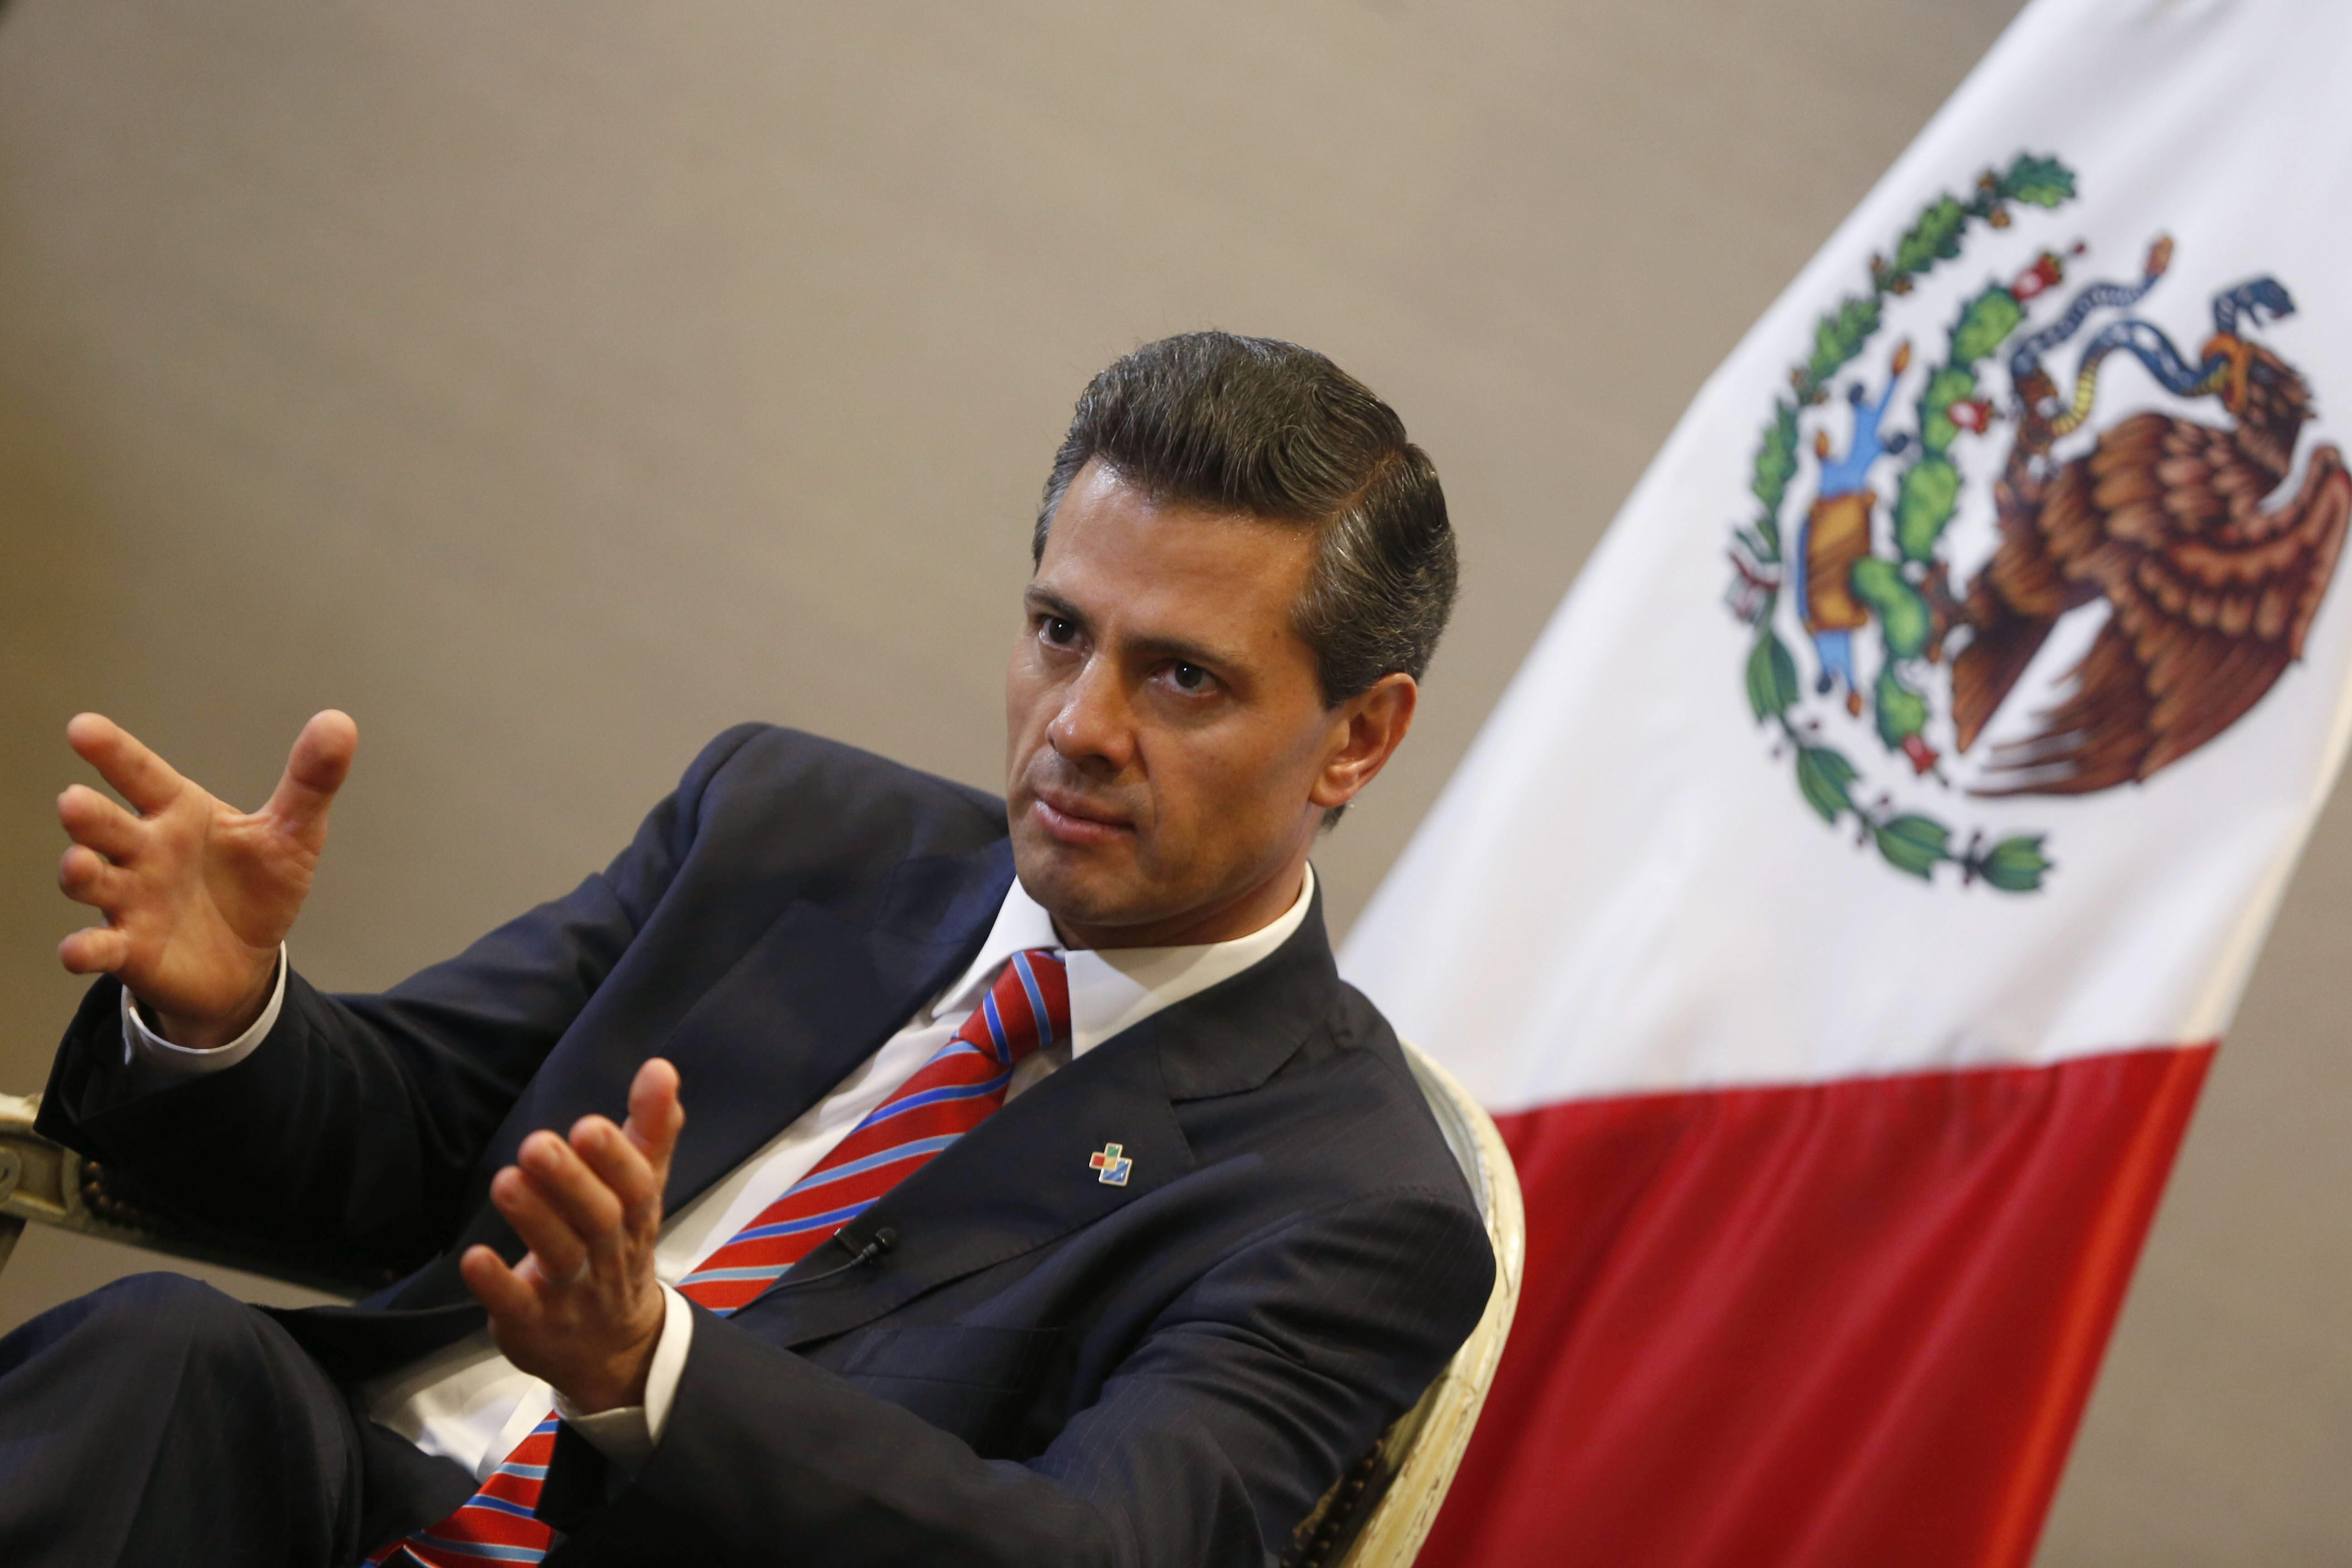  México no pagará el muro propuesto por Trump, reitera Peña Nieto